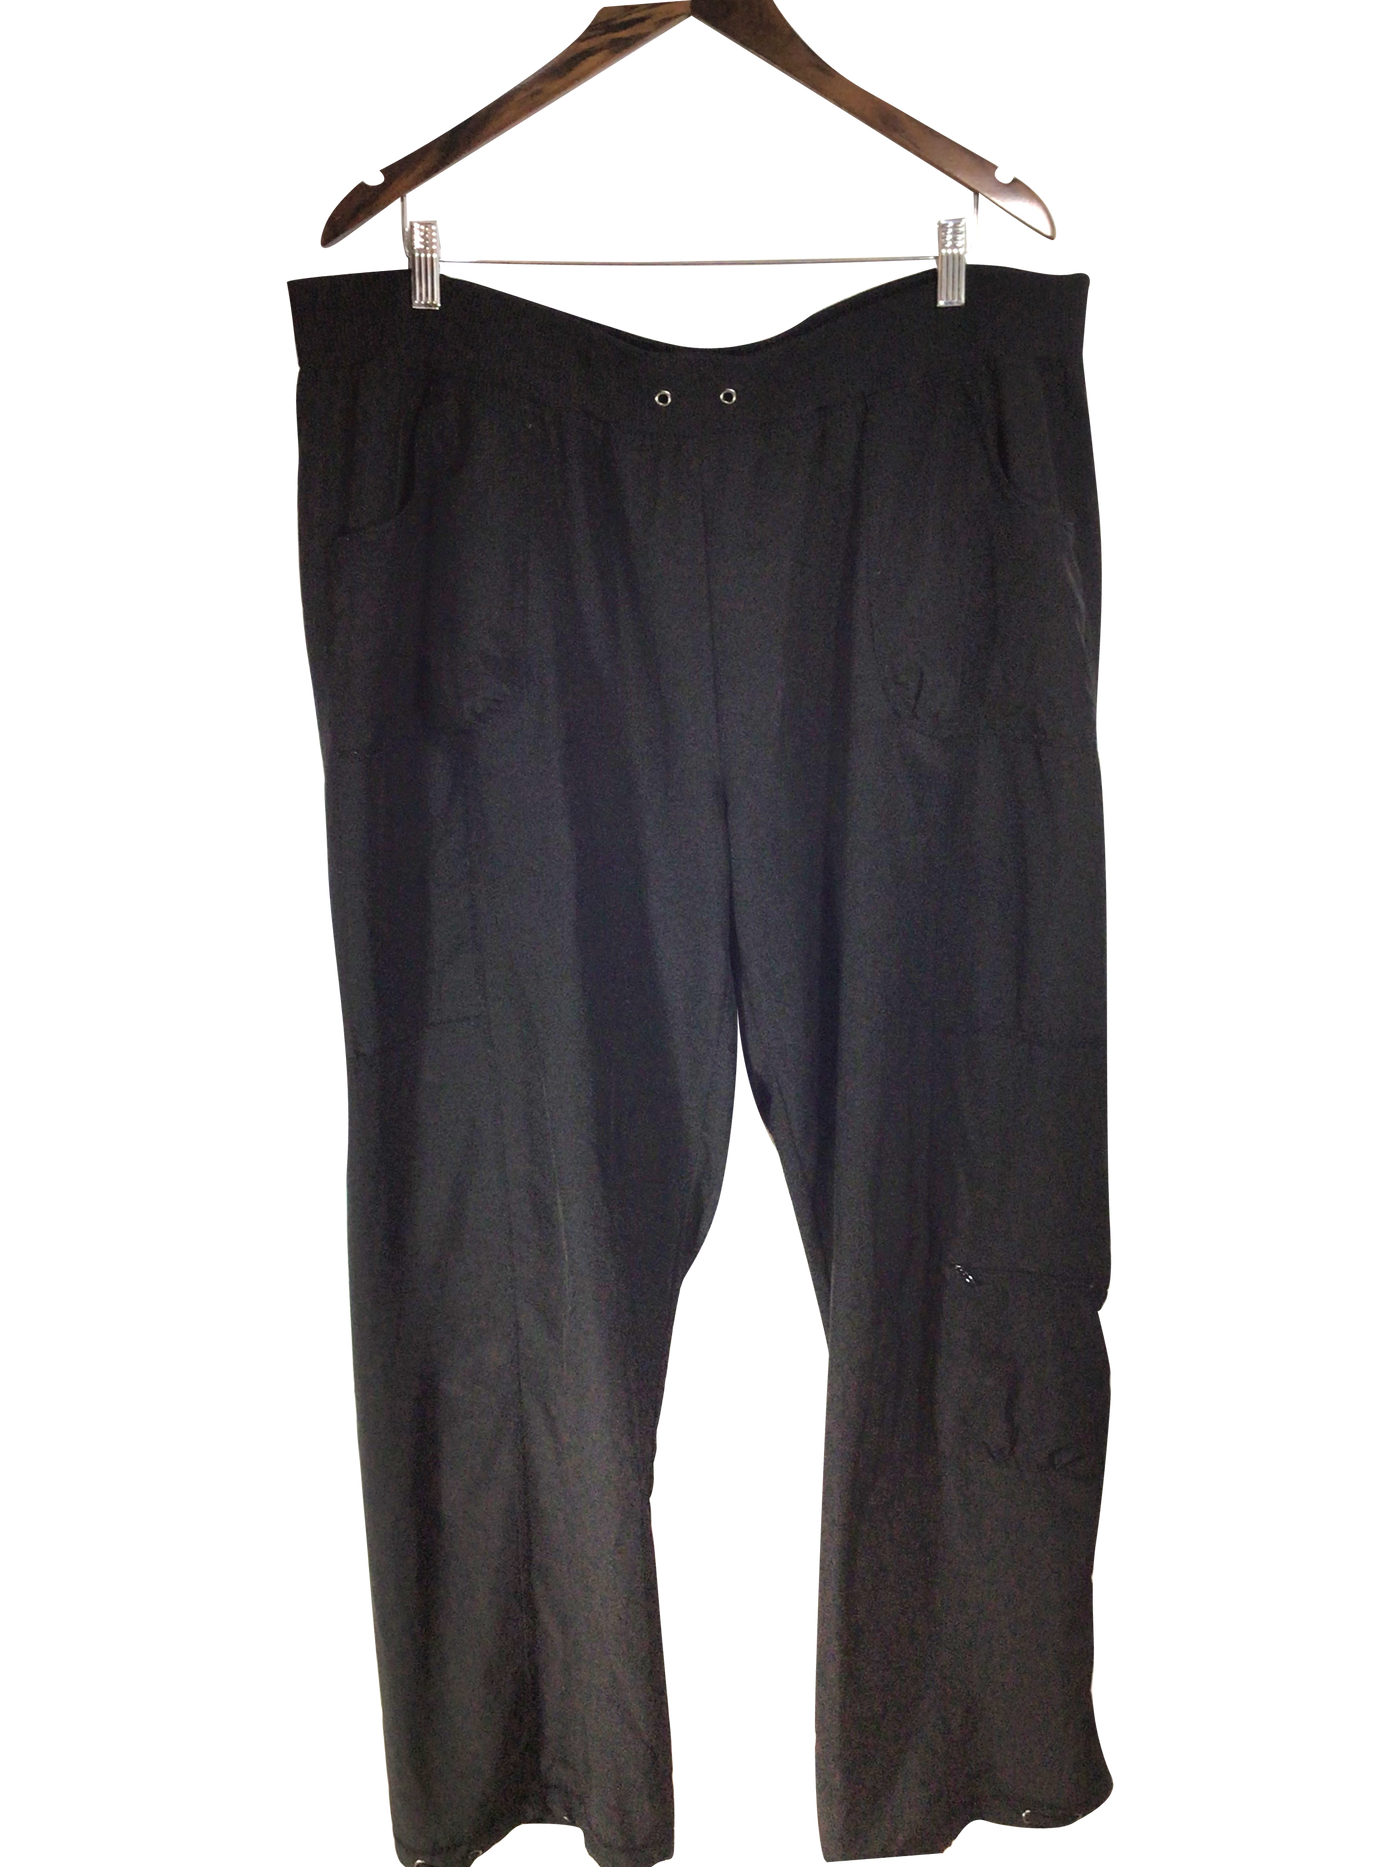 NOLA Women Work Pants Regular fit in Black - Size 2X | 4.94 $ KOOP